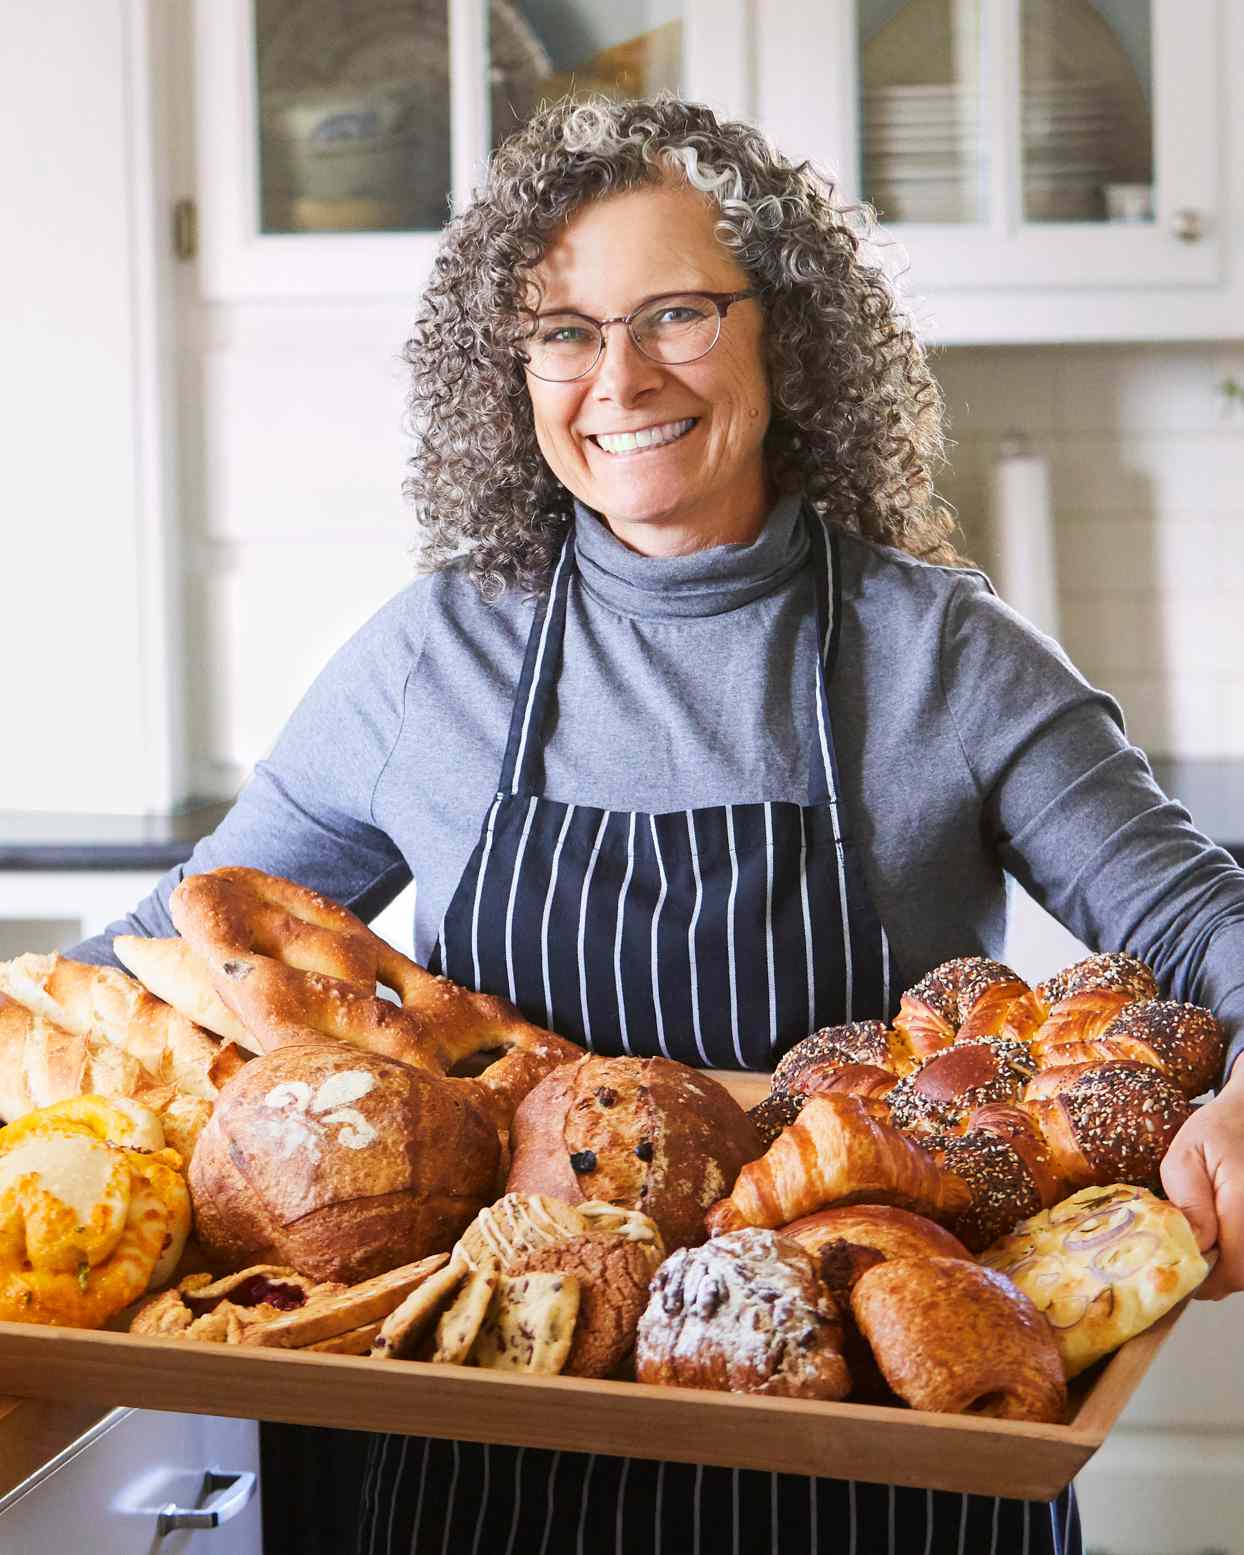 Cathy Drabkin baked bread